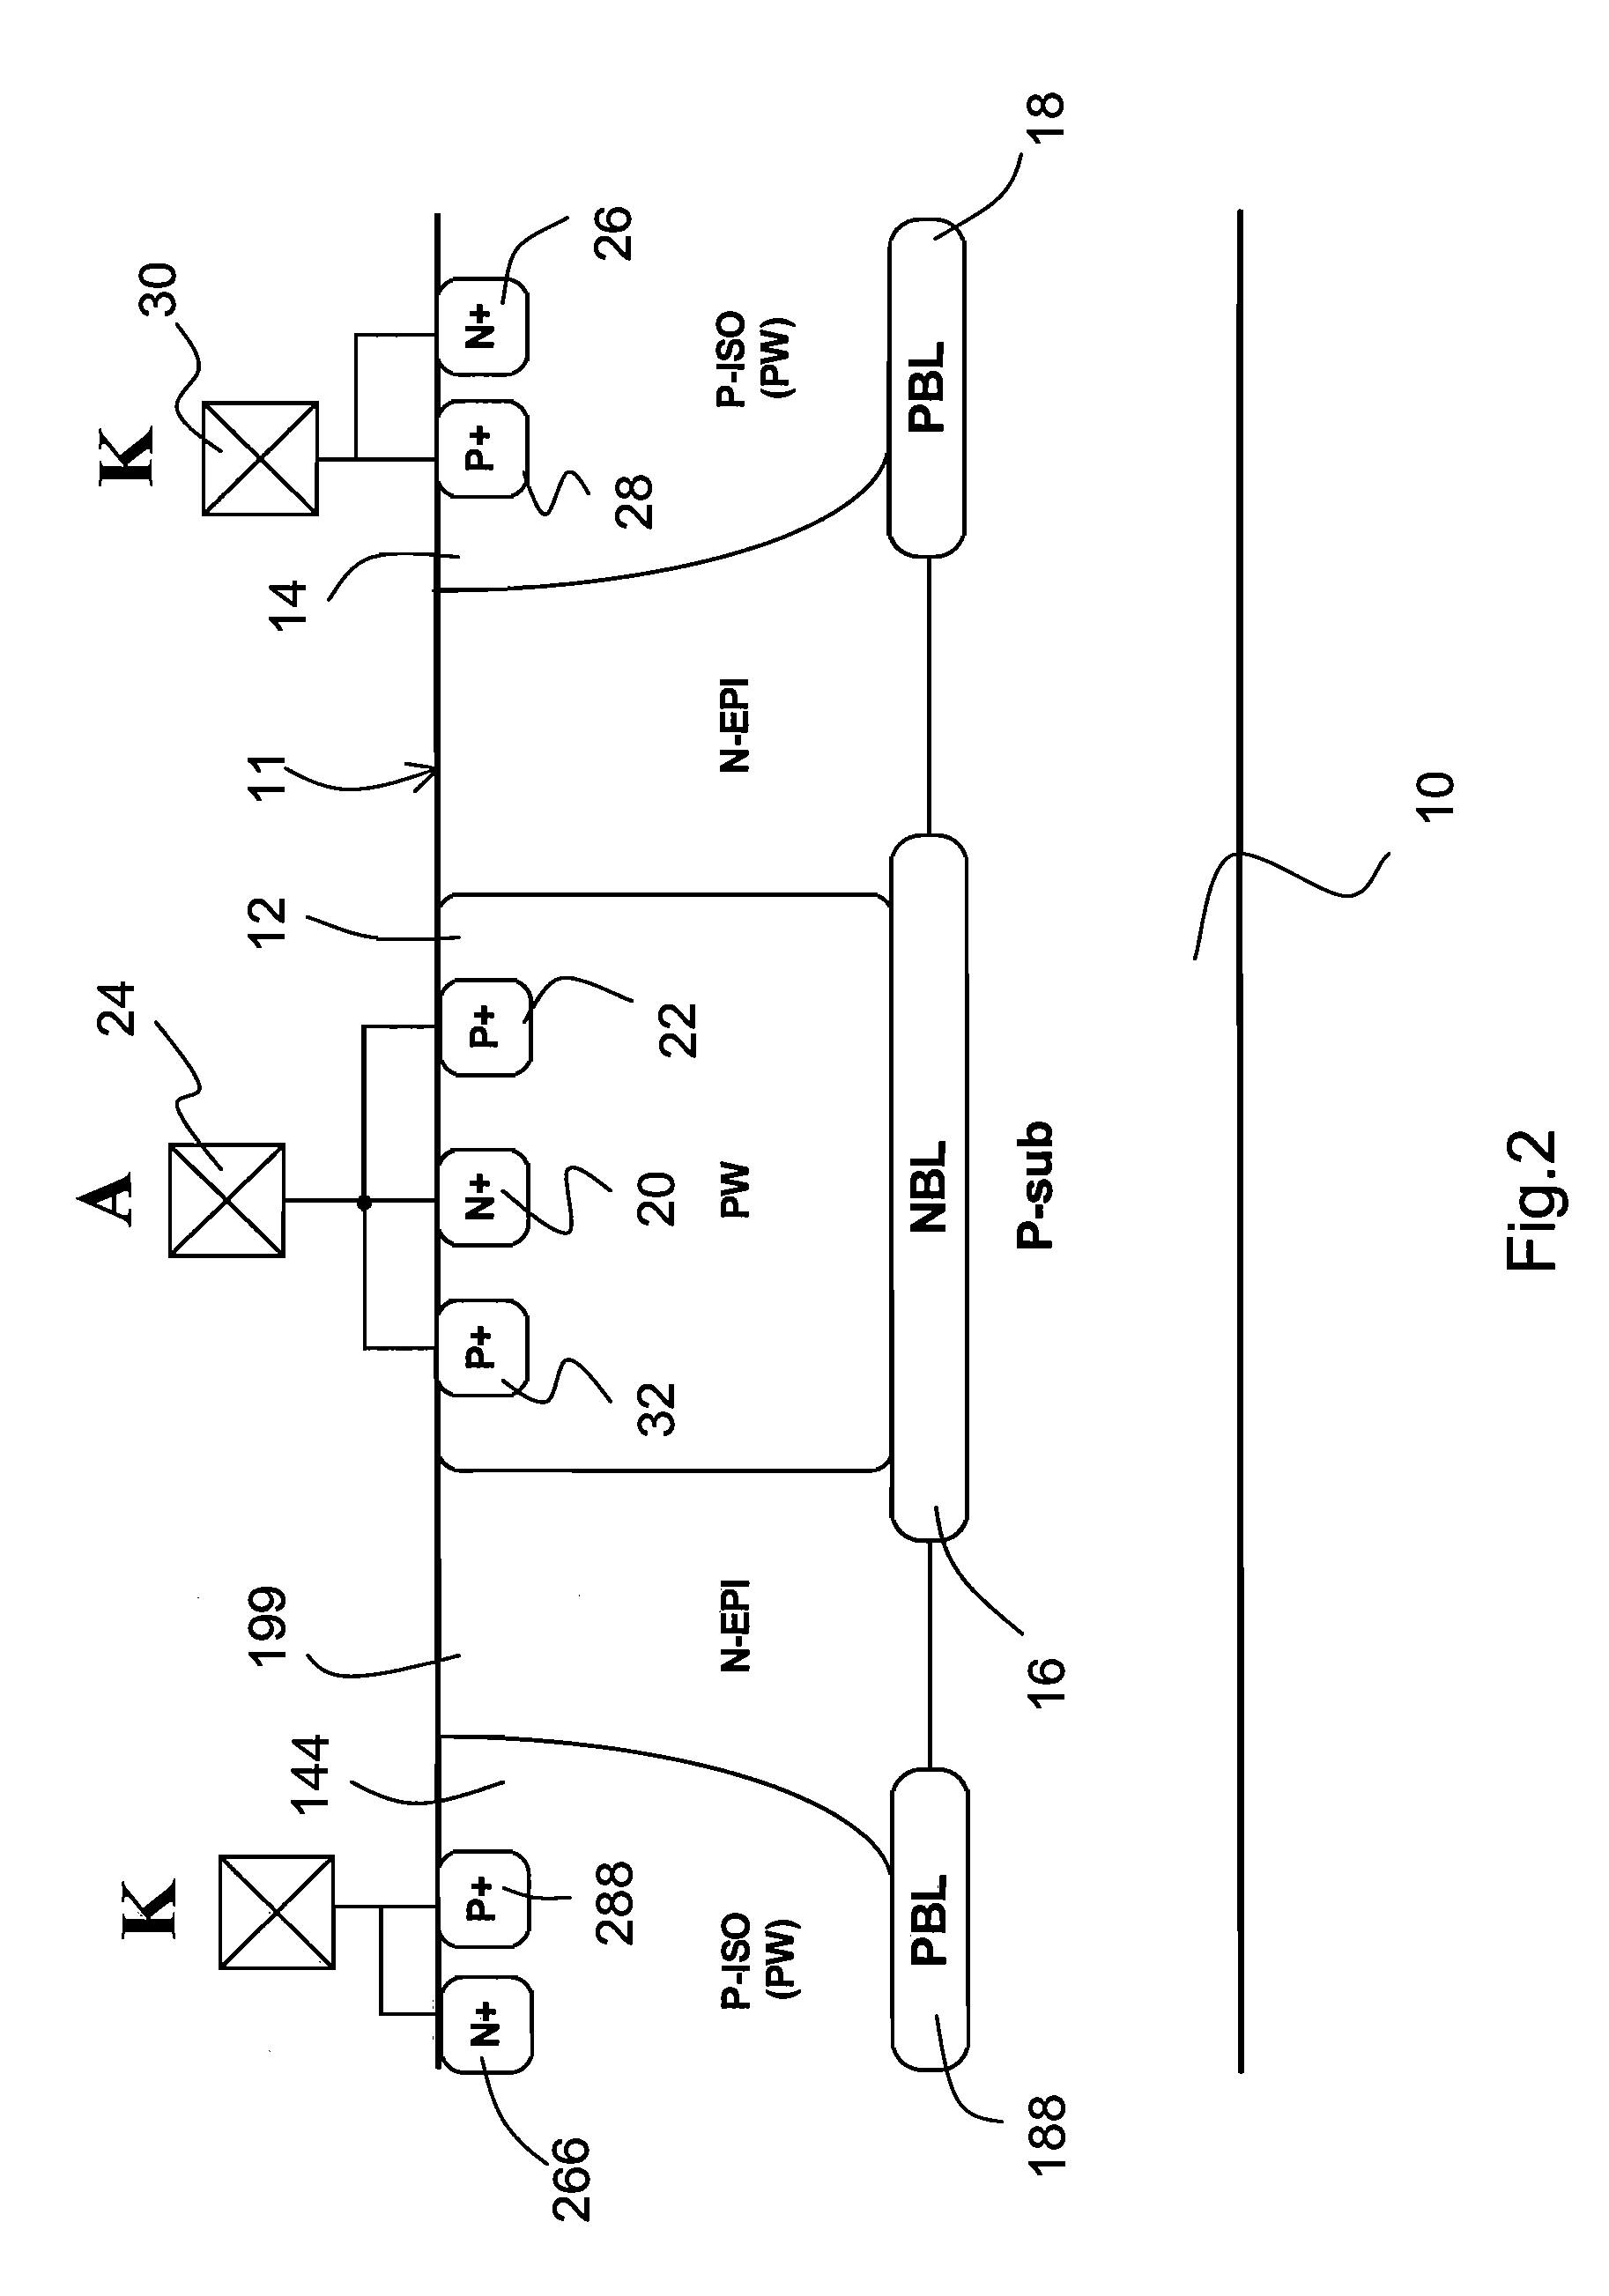 Asymmetric bidirectional silicon-controlled rectifier